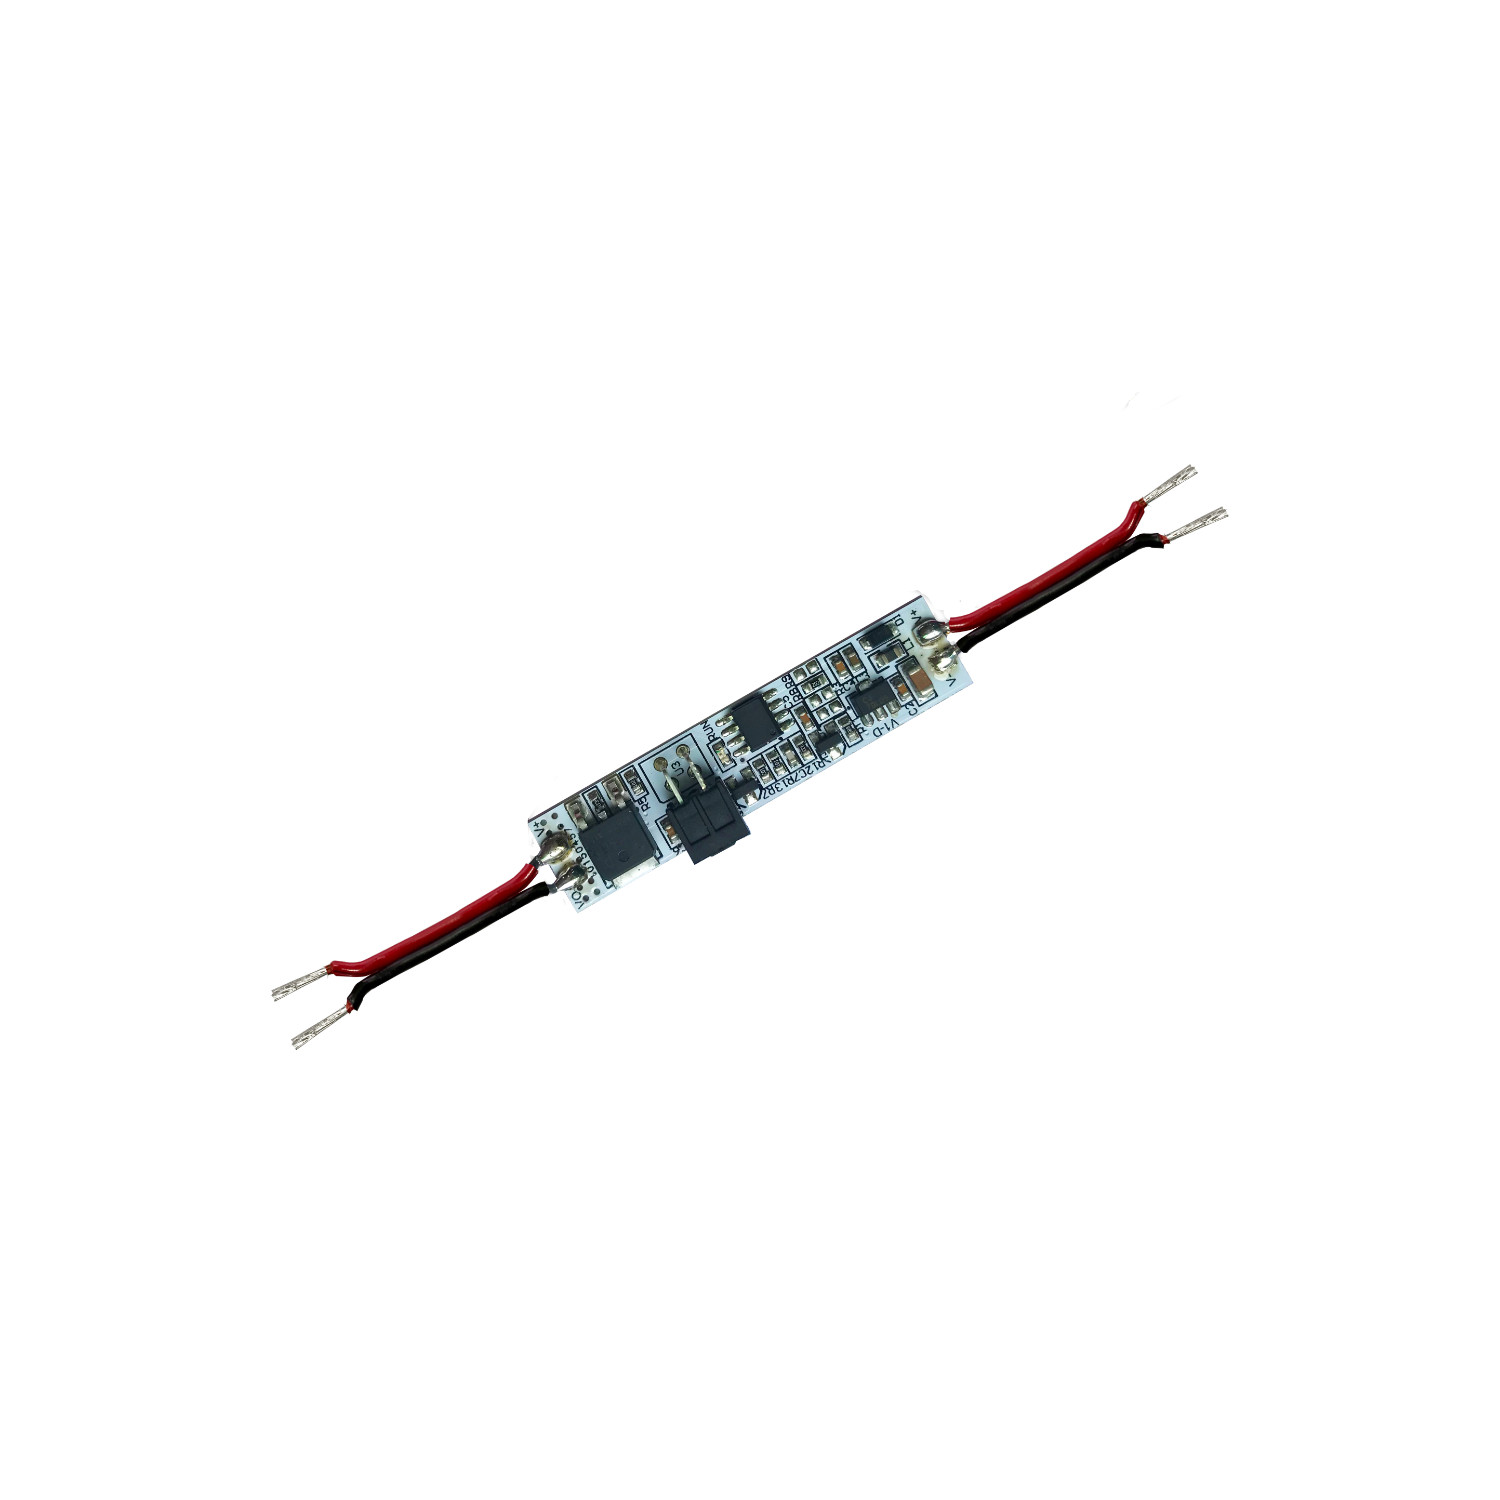 Mini Sensor Interruptor Sin Contacto para Tiras LED 12-24V - efectoLED